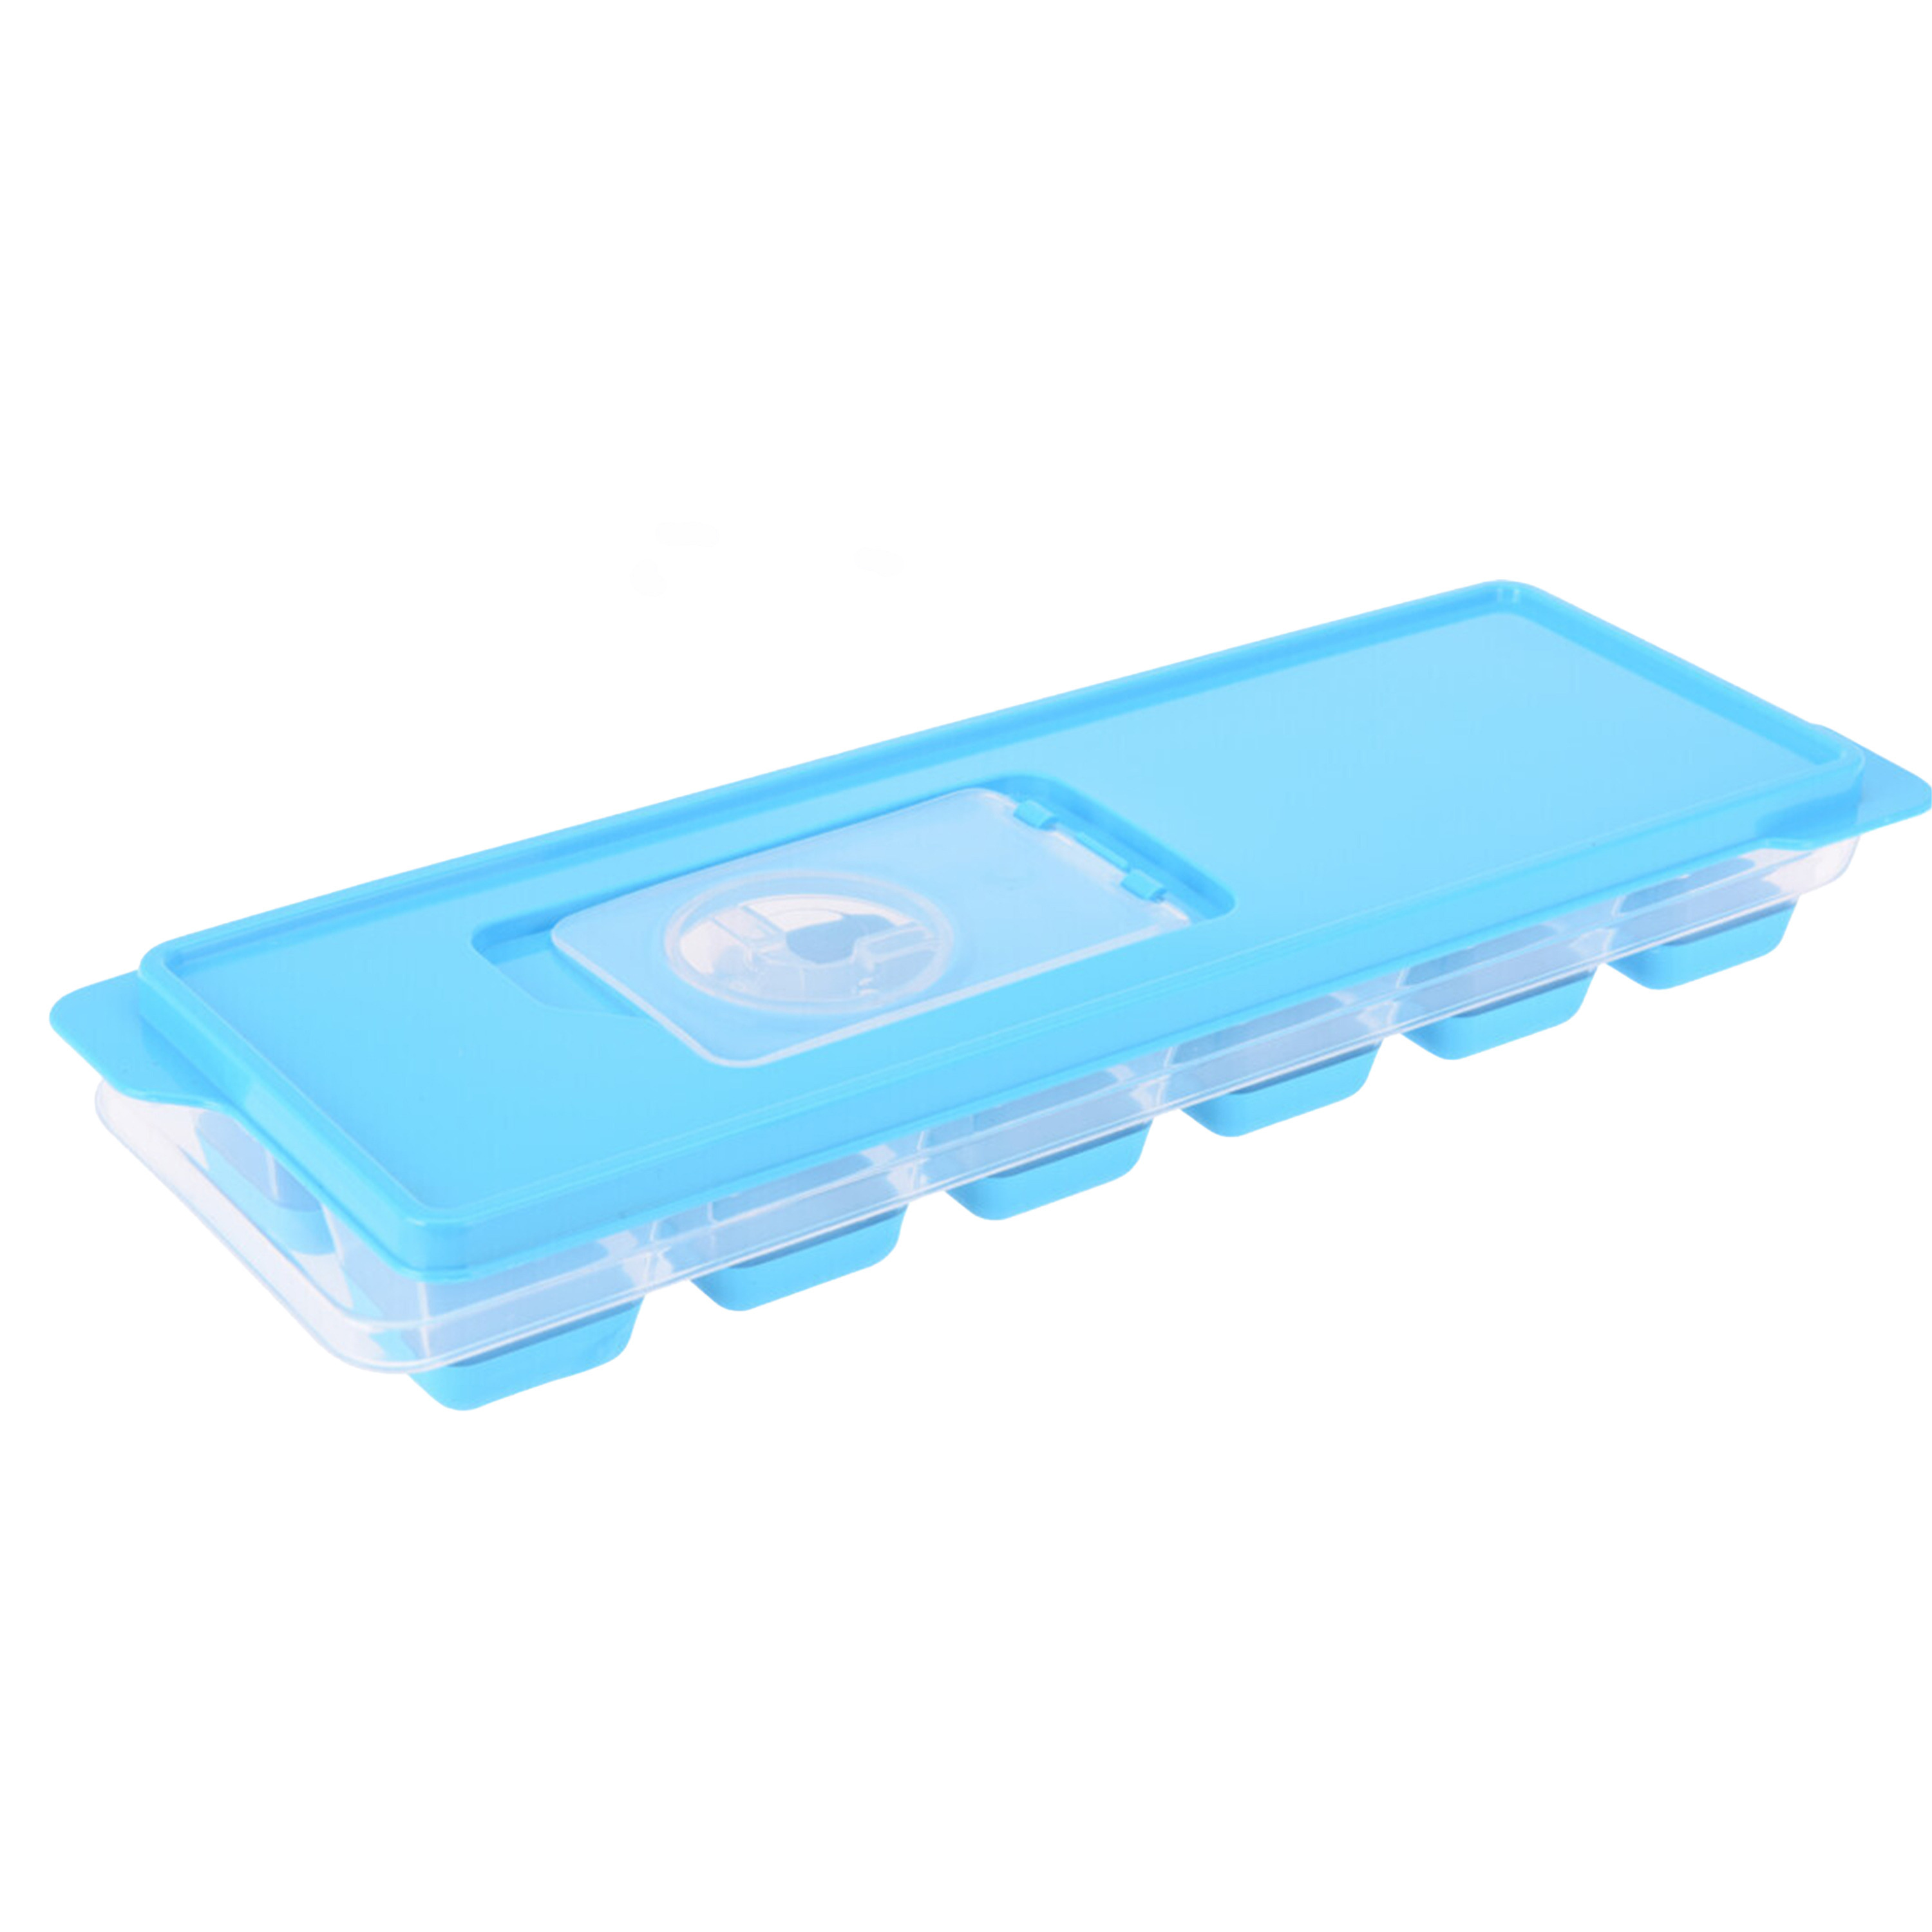 Tray met ijsklontjes-ijsblokjes vormpjes 12 vakjes kunststof blauw met afsluitdeksel